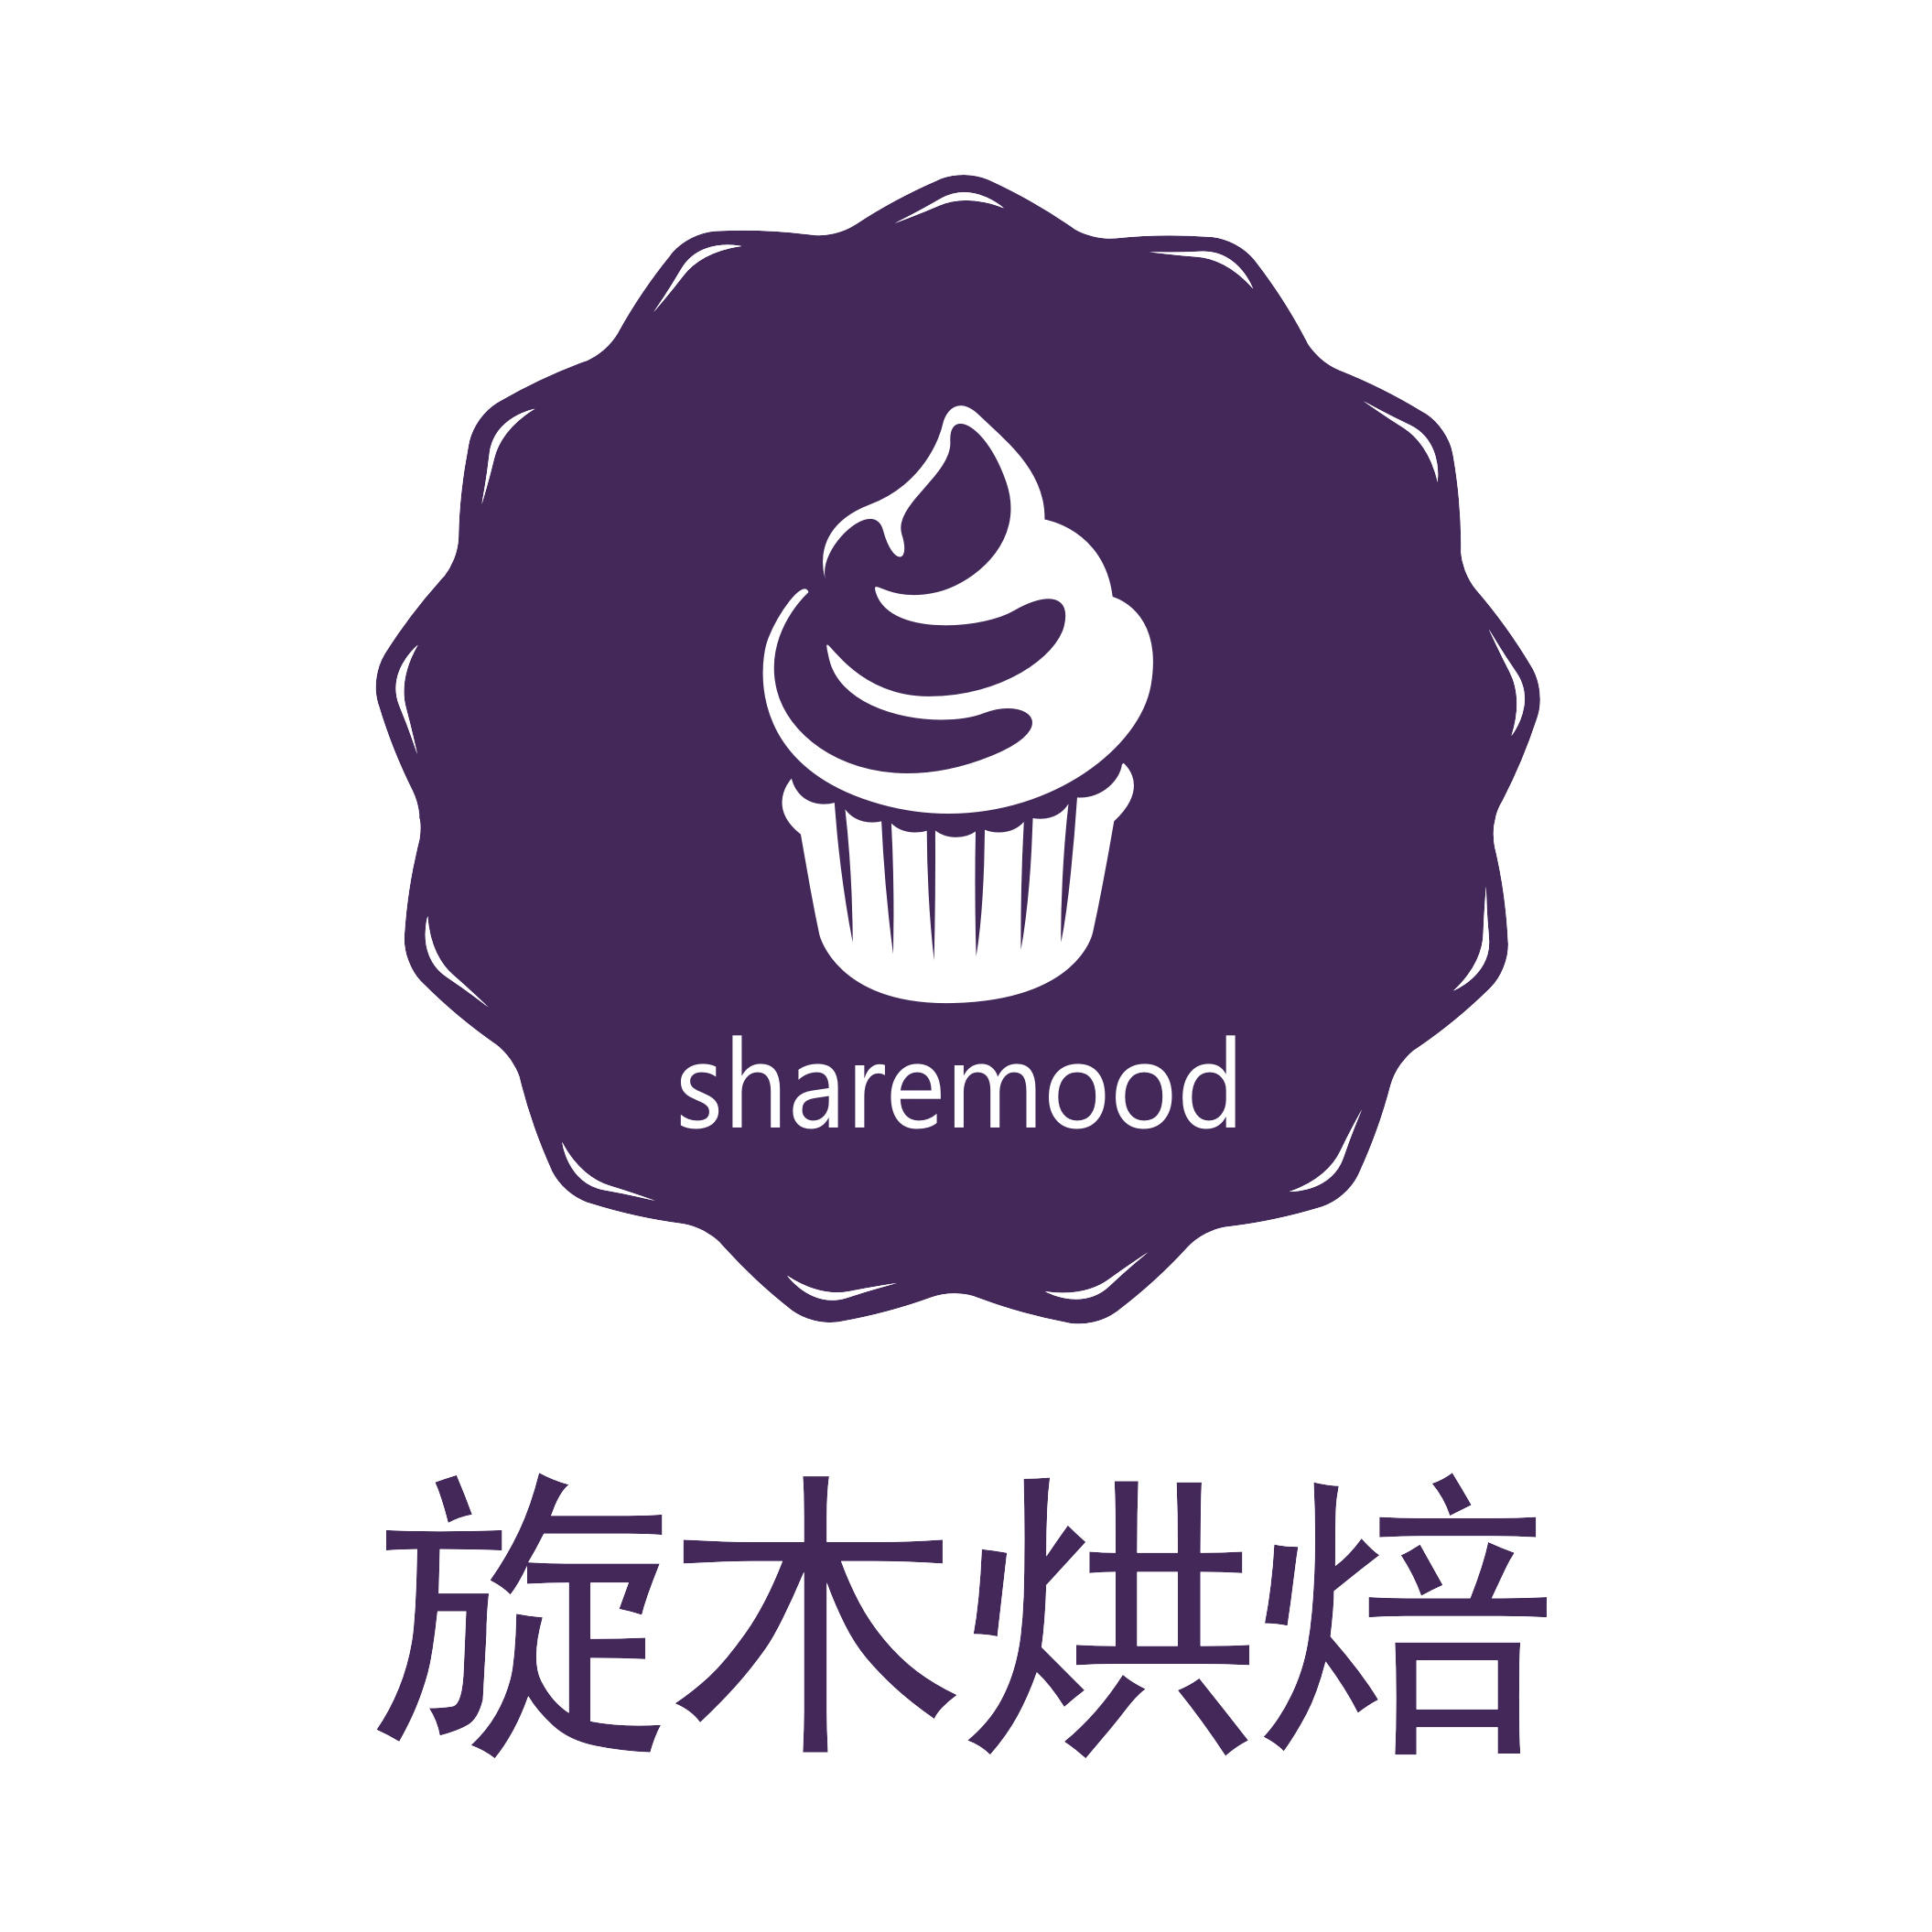 sharemood生日蛋糕旗舰店